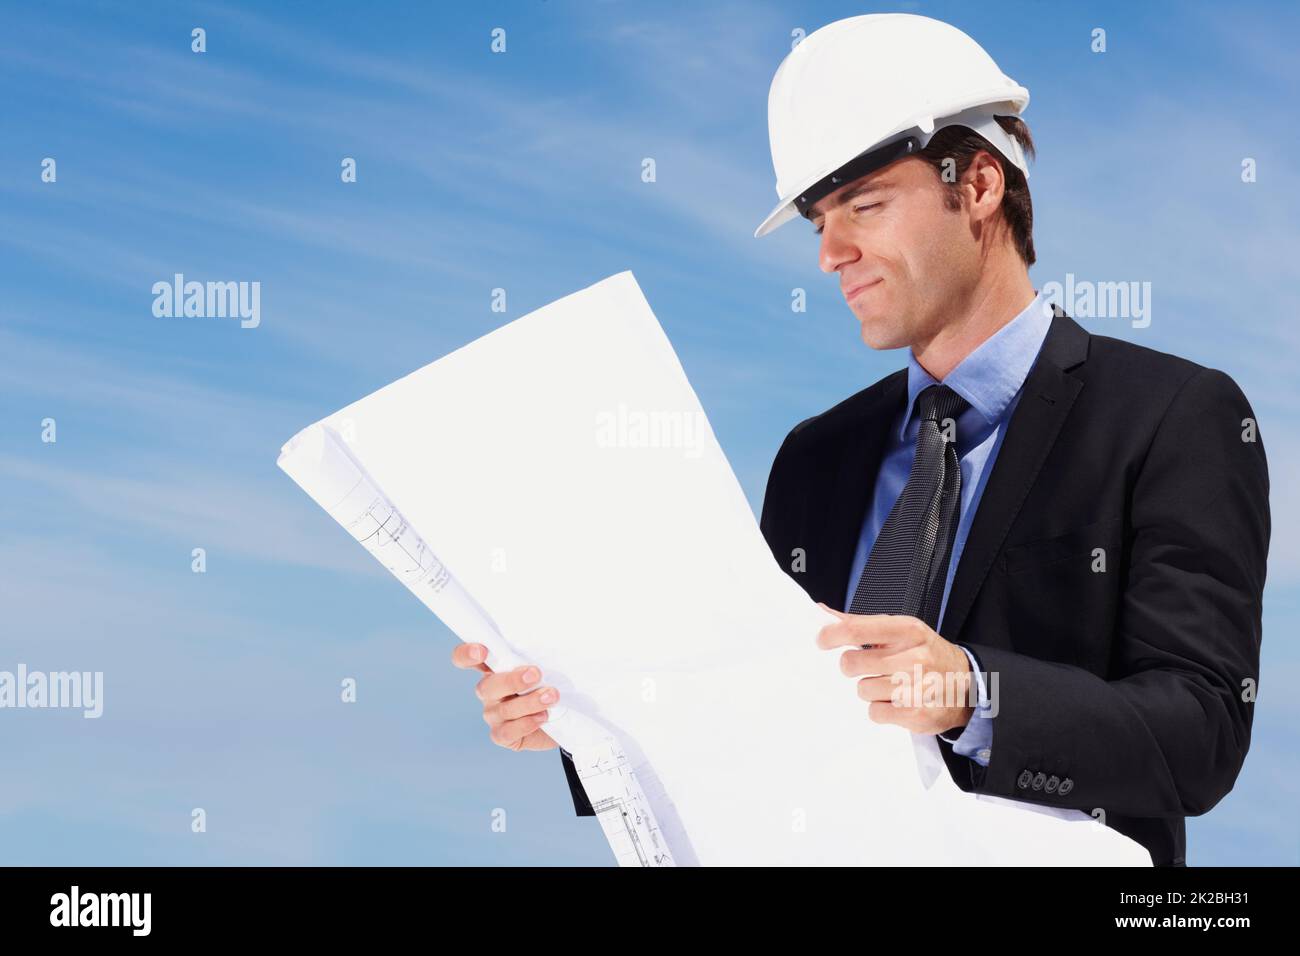 Intelligenter Architekt, der einen neuen Bauplan ansieht. Porträt eines intelligenten Architekten, der einen Bauplan betrachtet. Stockfoto